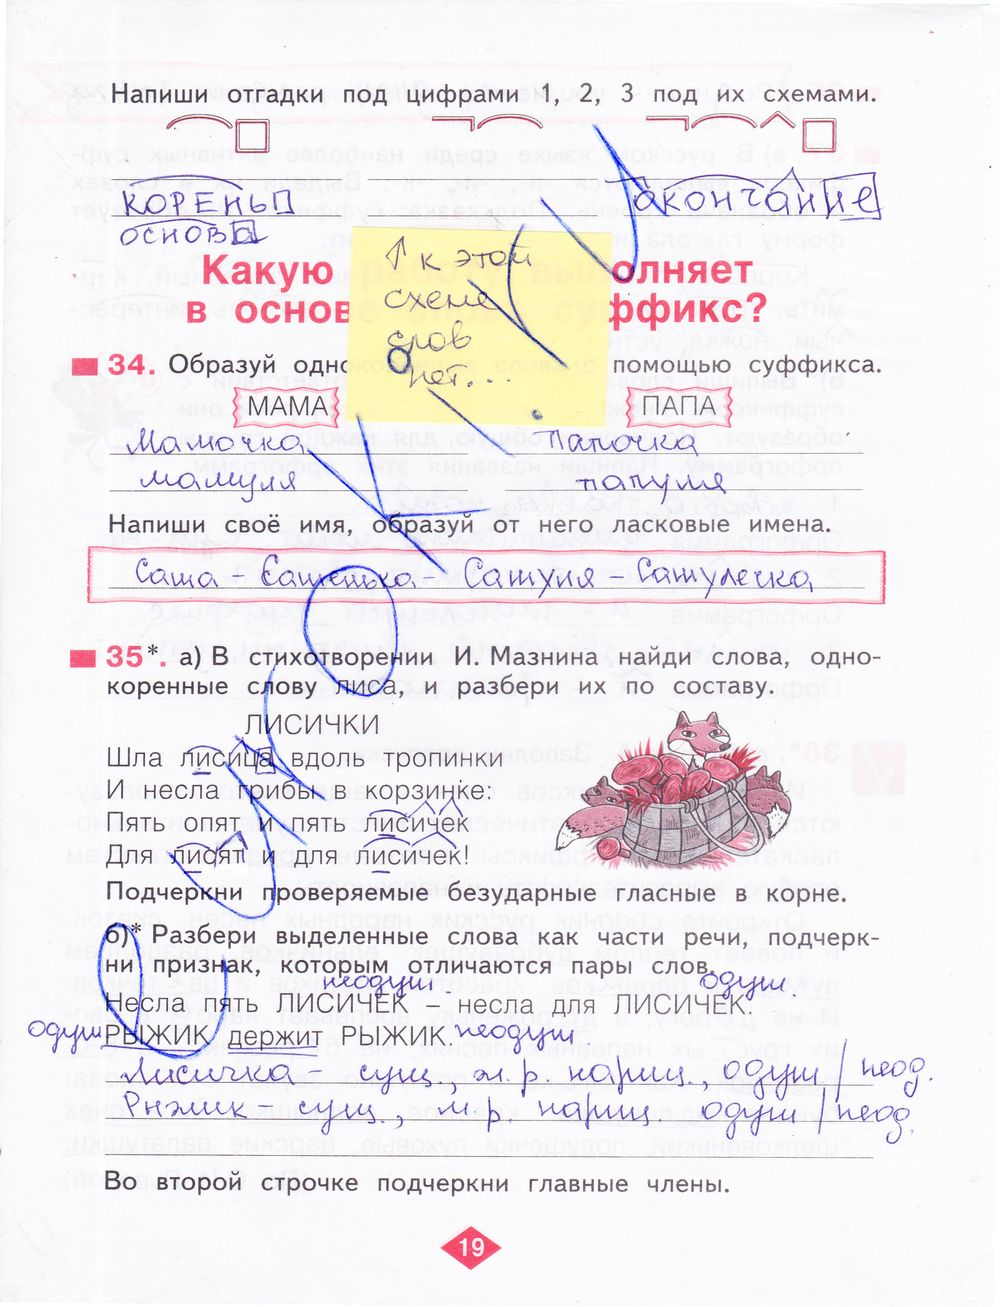 ГДЗ Русский язык 3 класс - стр. 19